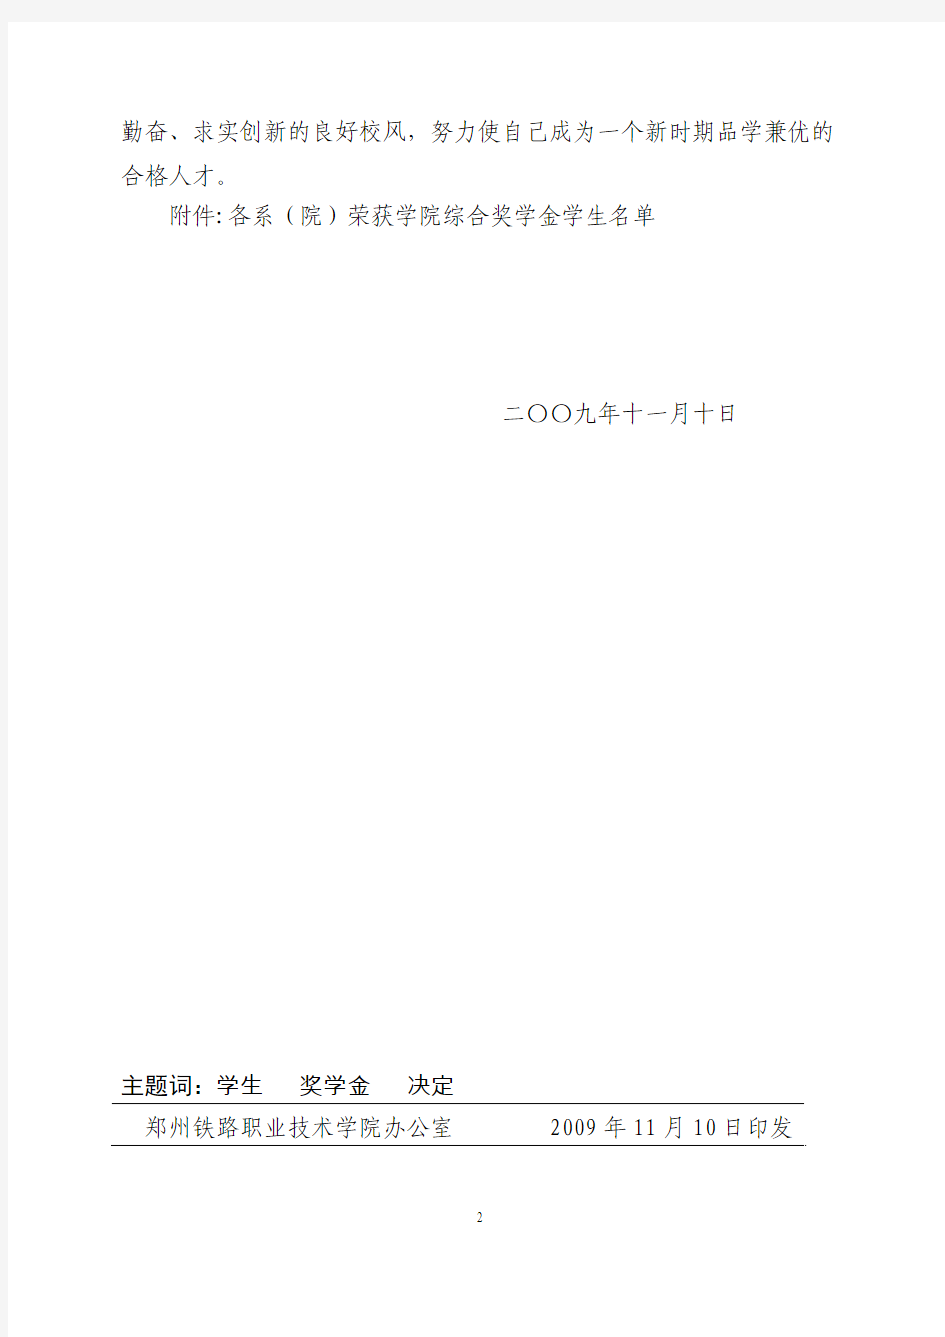 郑州铁路职业技术学院文件